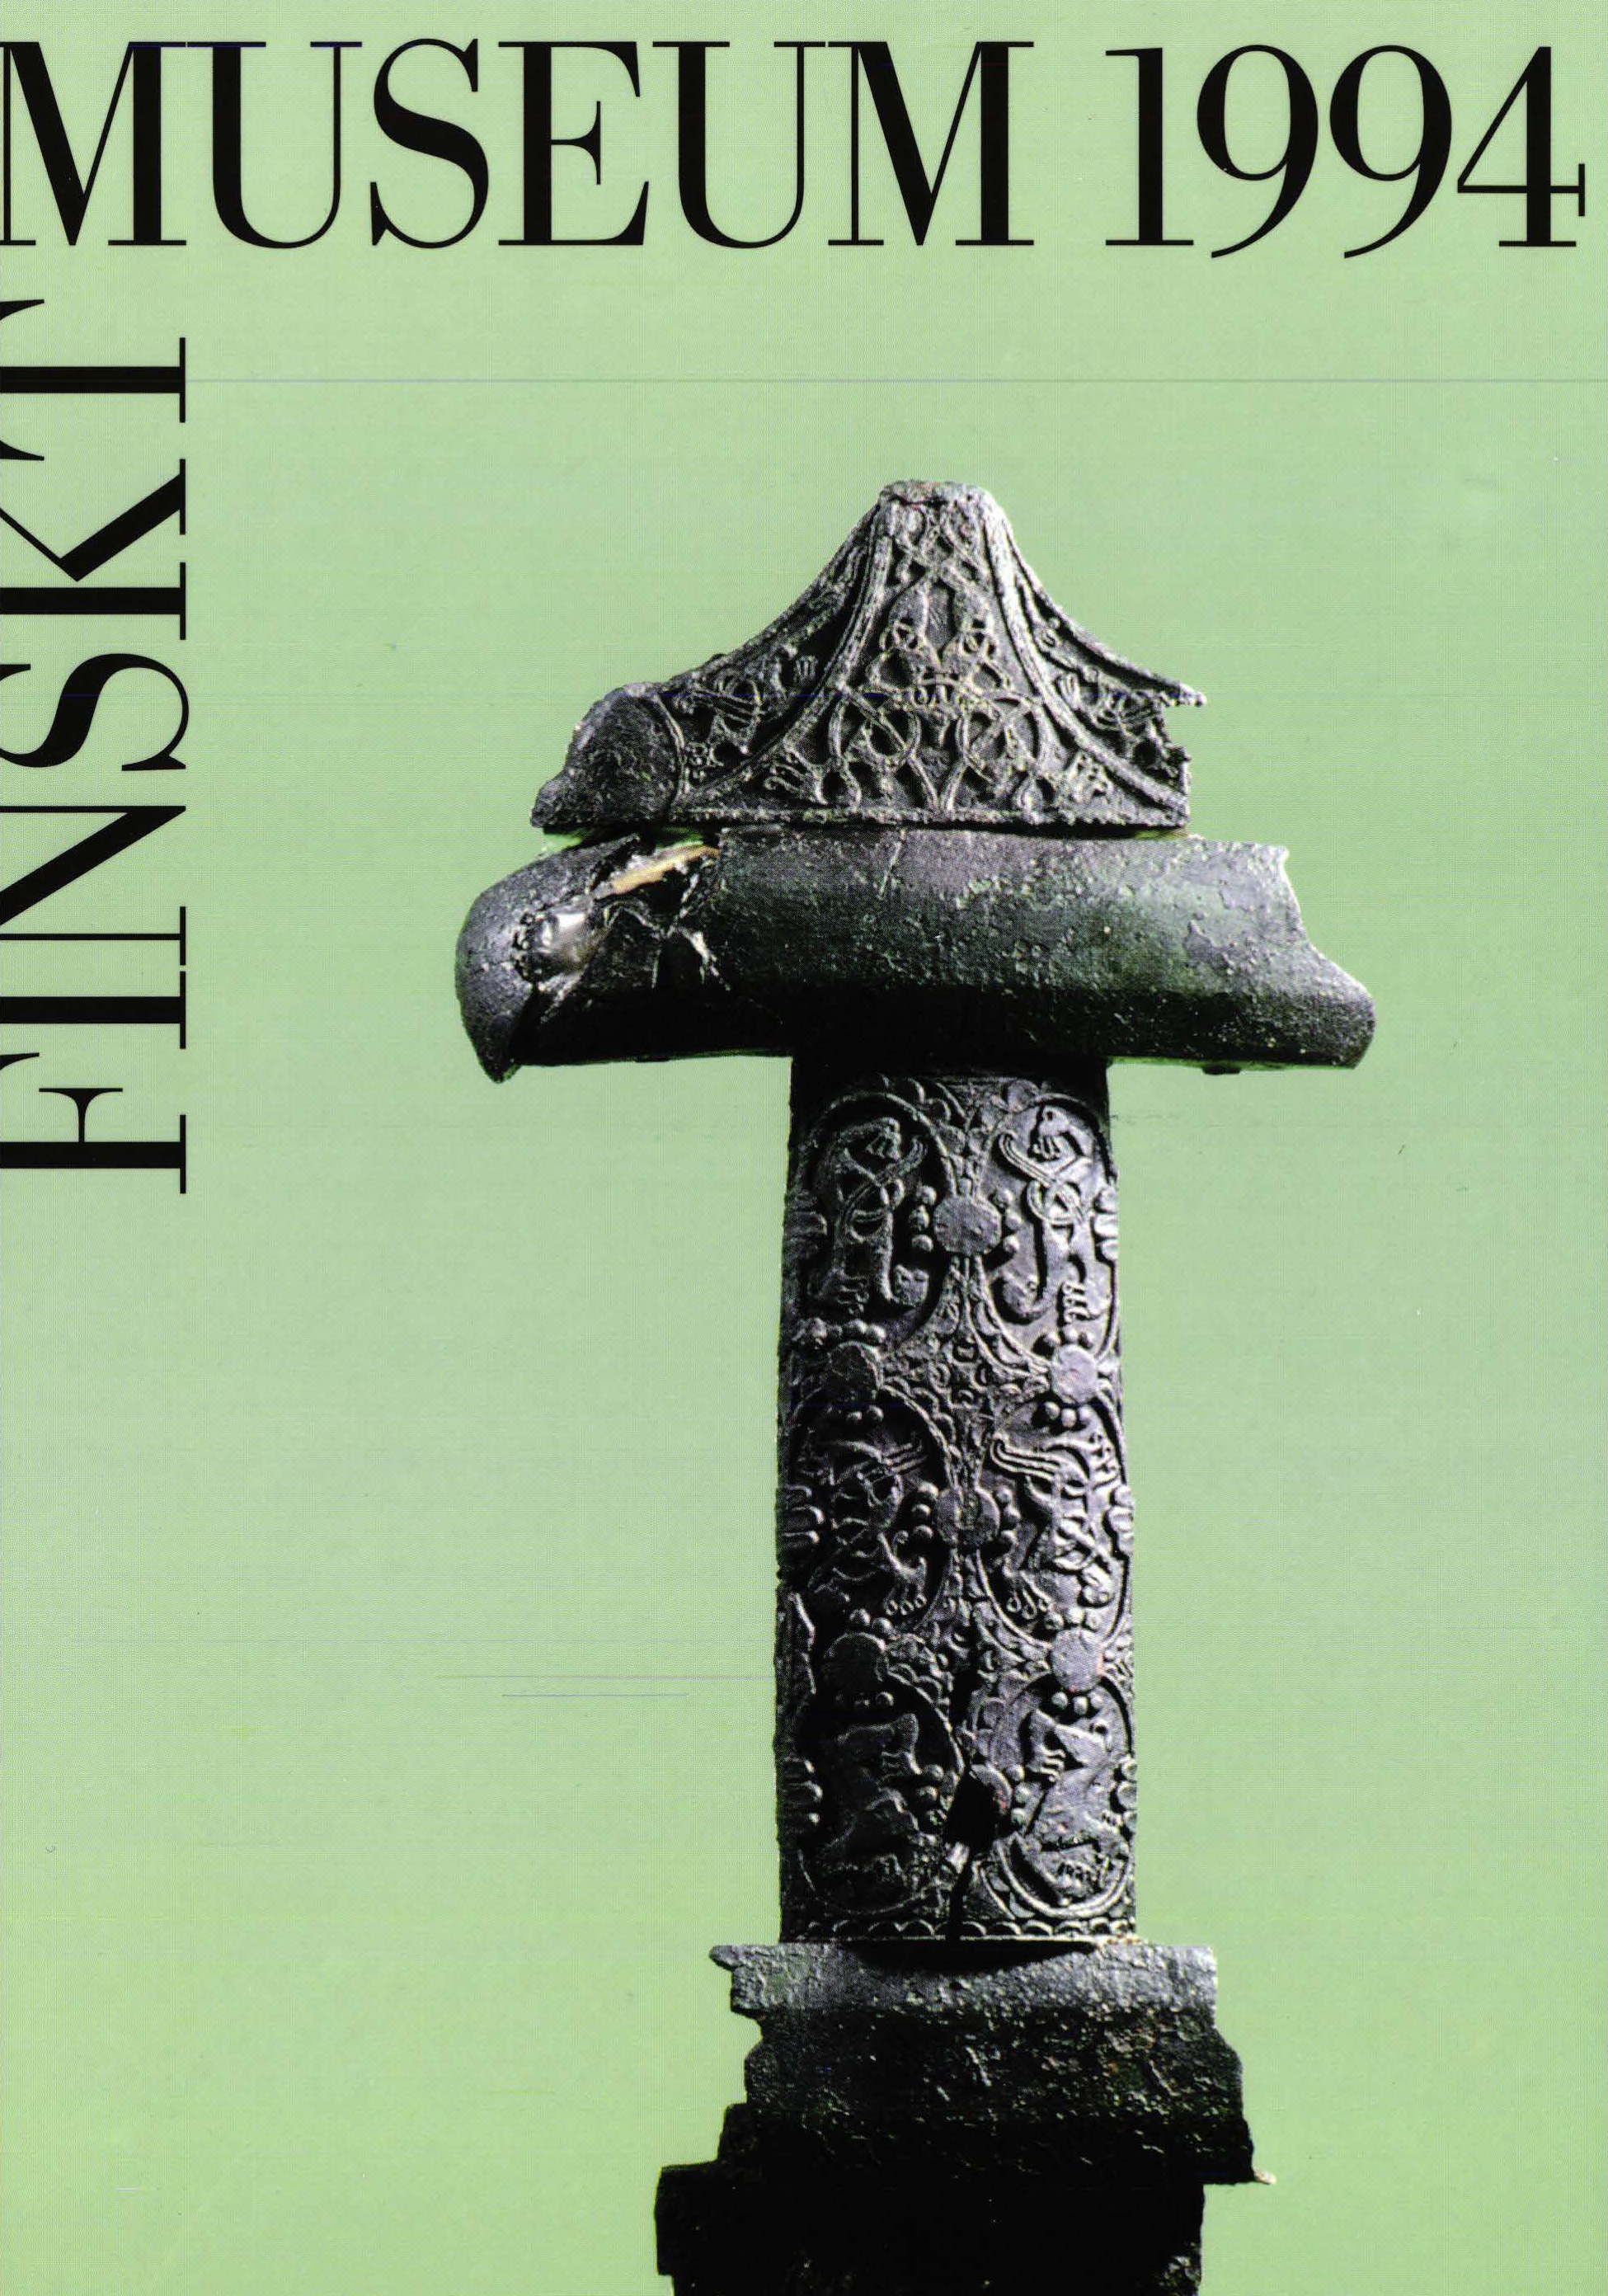 					Visa Vol 101: Finskt Museum 1994
				